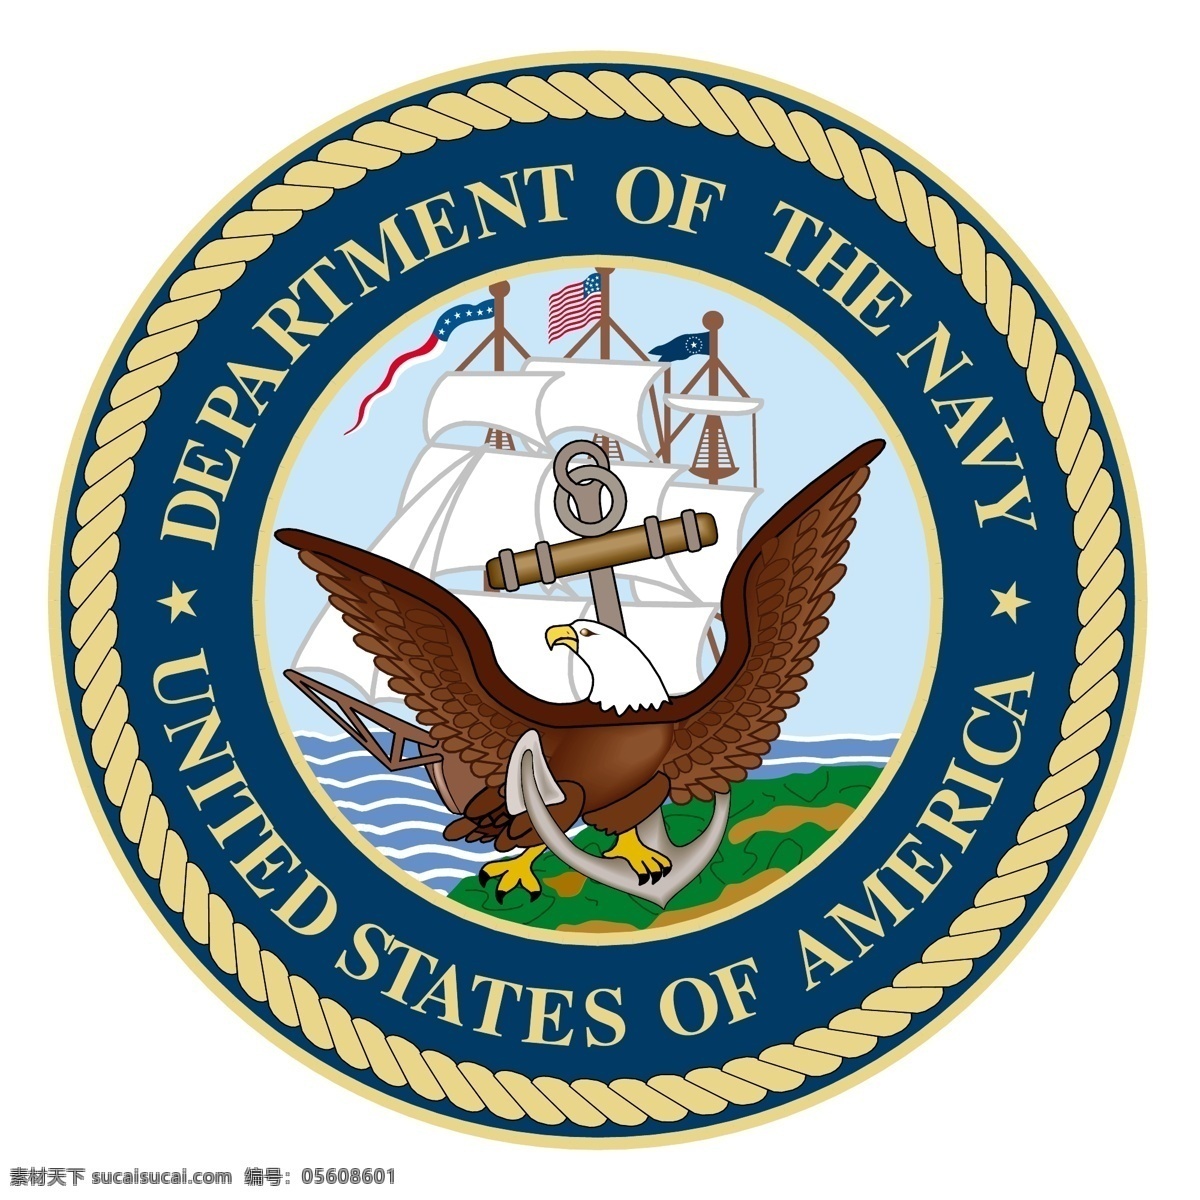 美国海军部 部 部门的海军 海军部 海军 logo 矢量 矢量图像 海军部海军部 艺术 载体 标识部 建筑家居